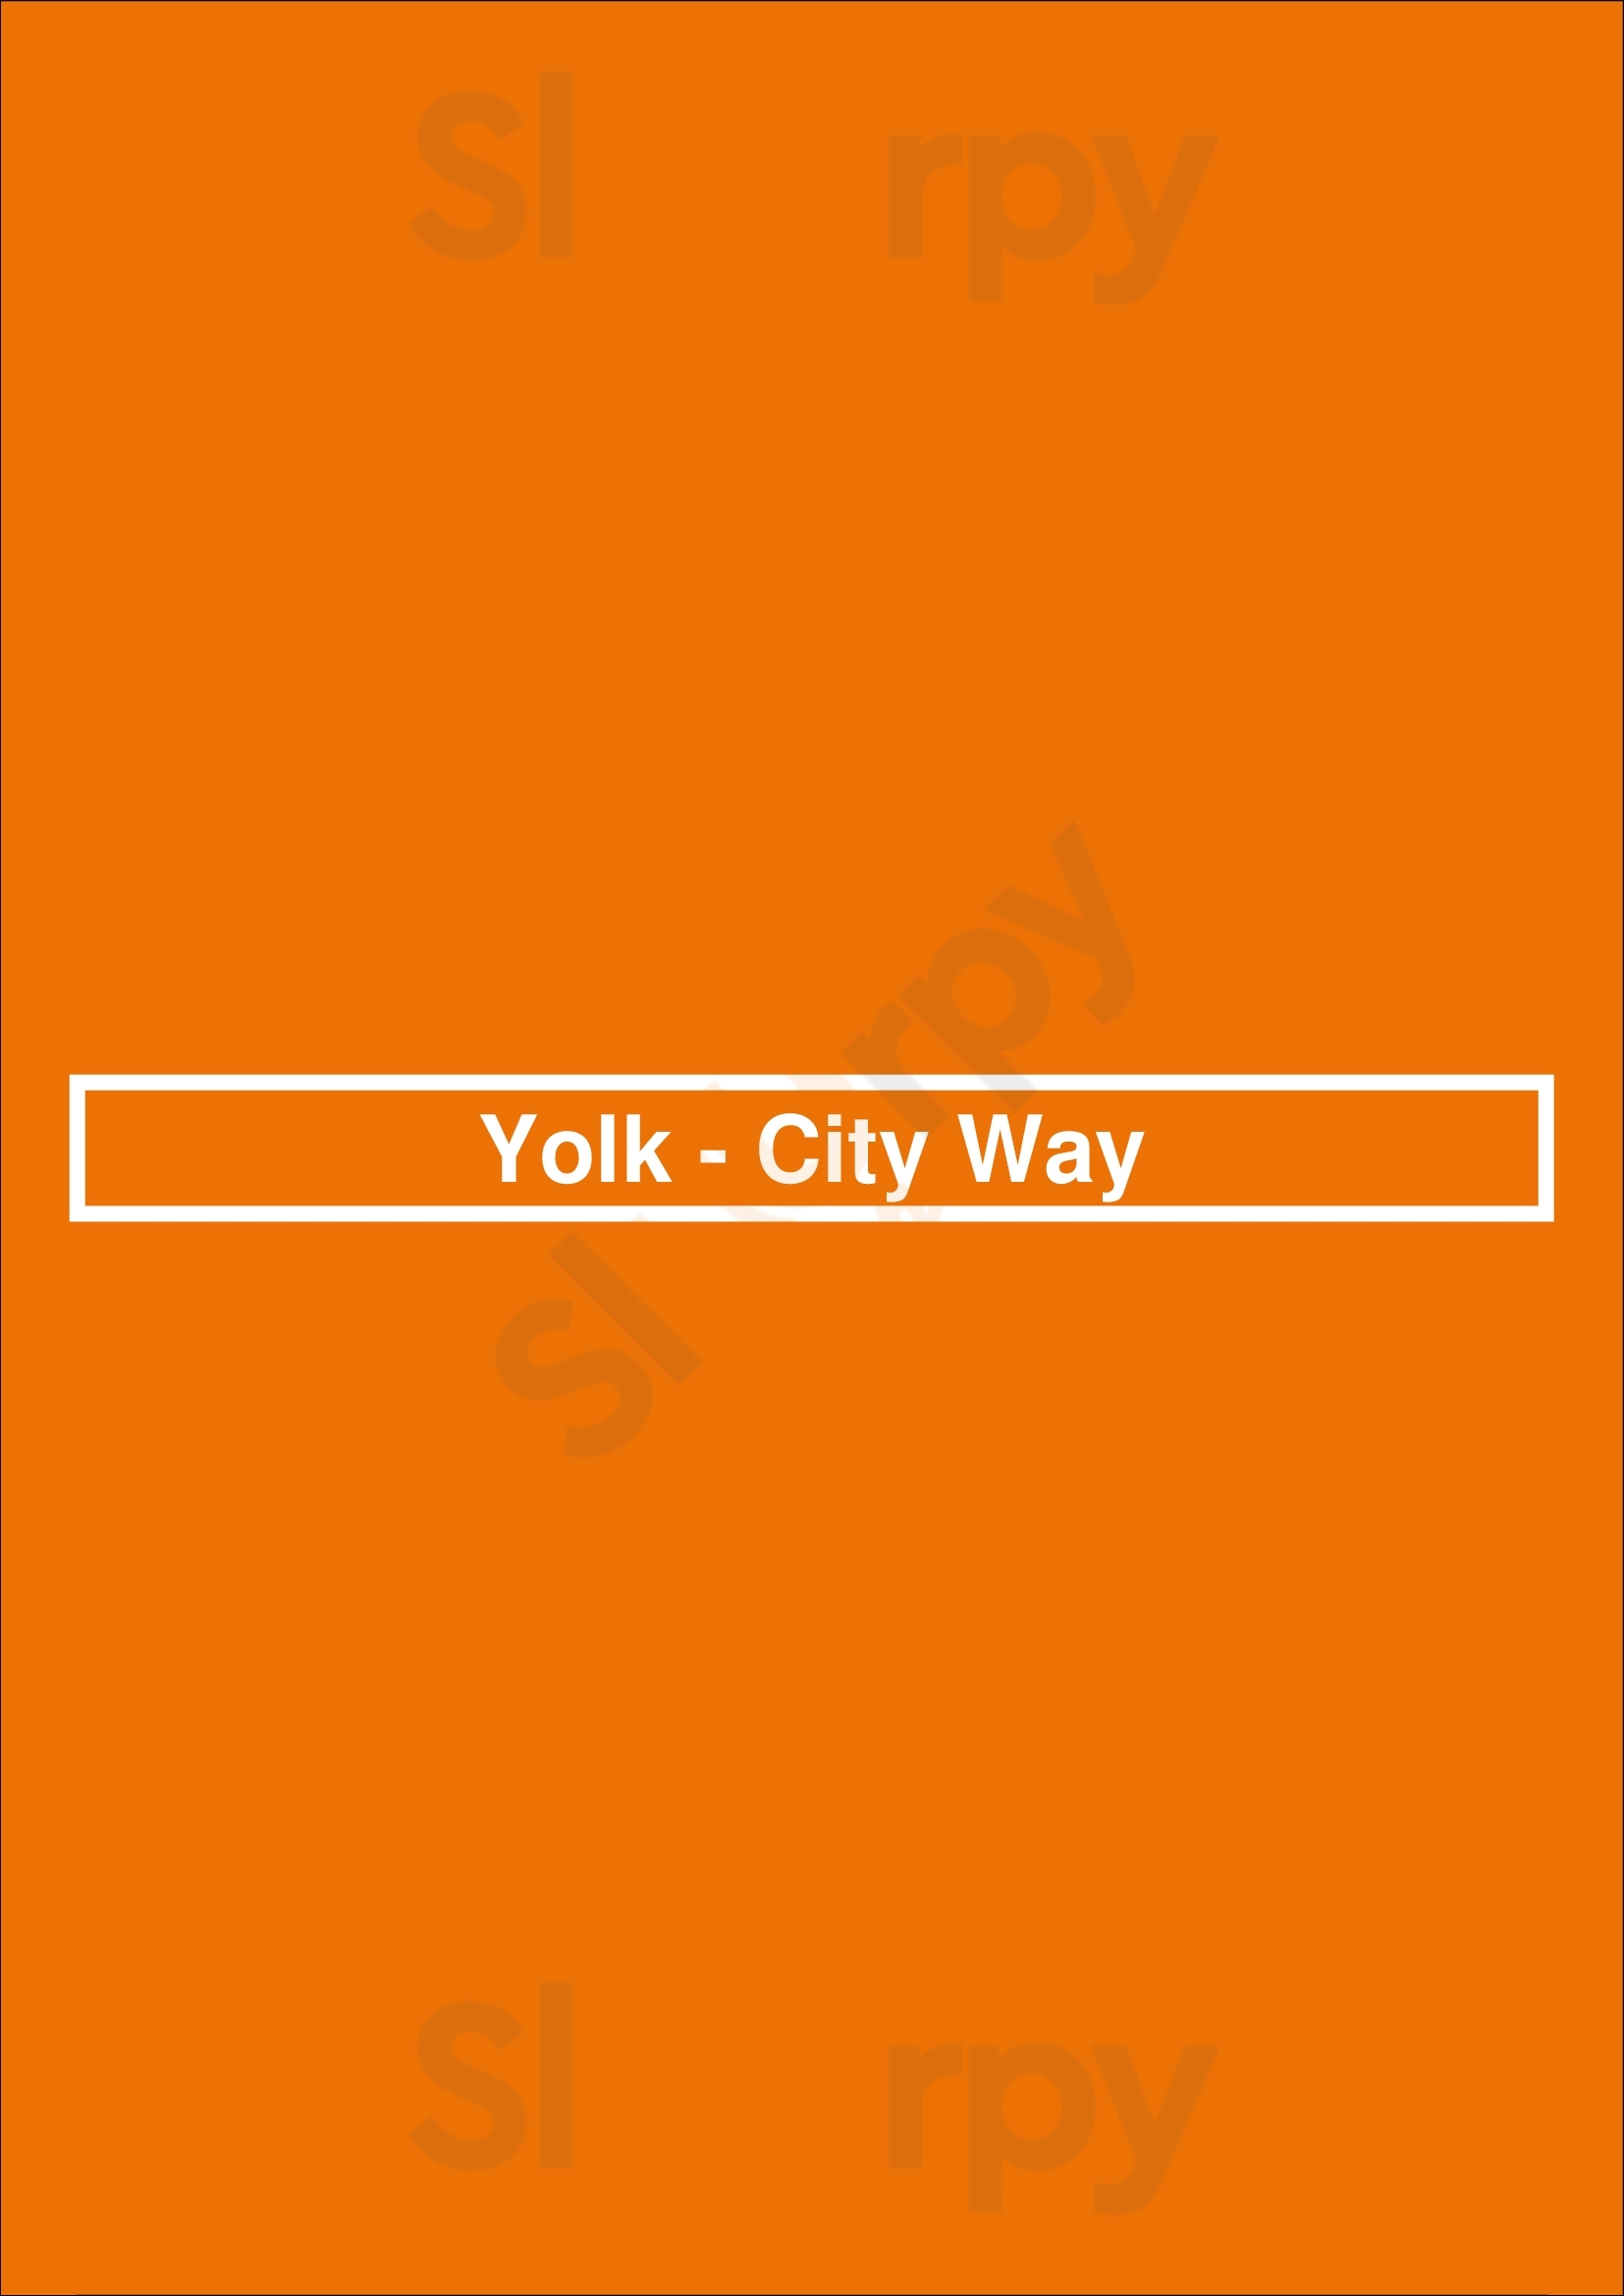 Yolk - City Way Indianapolis Menu - 1